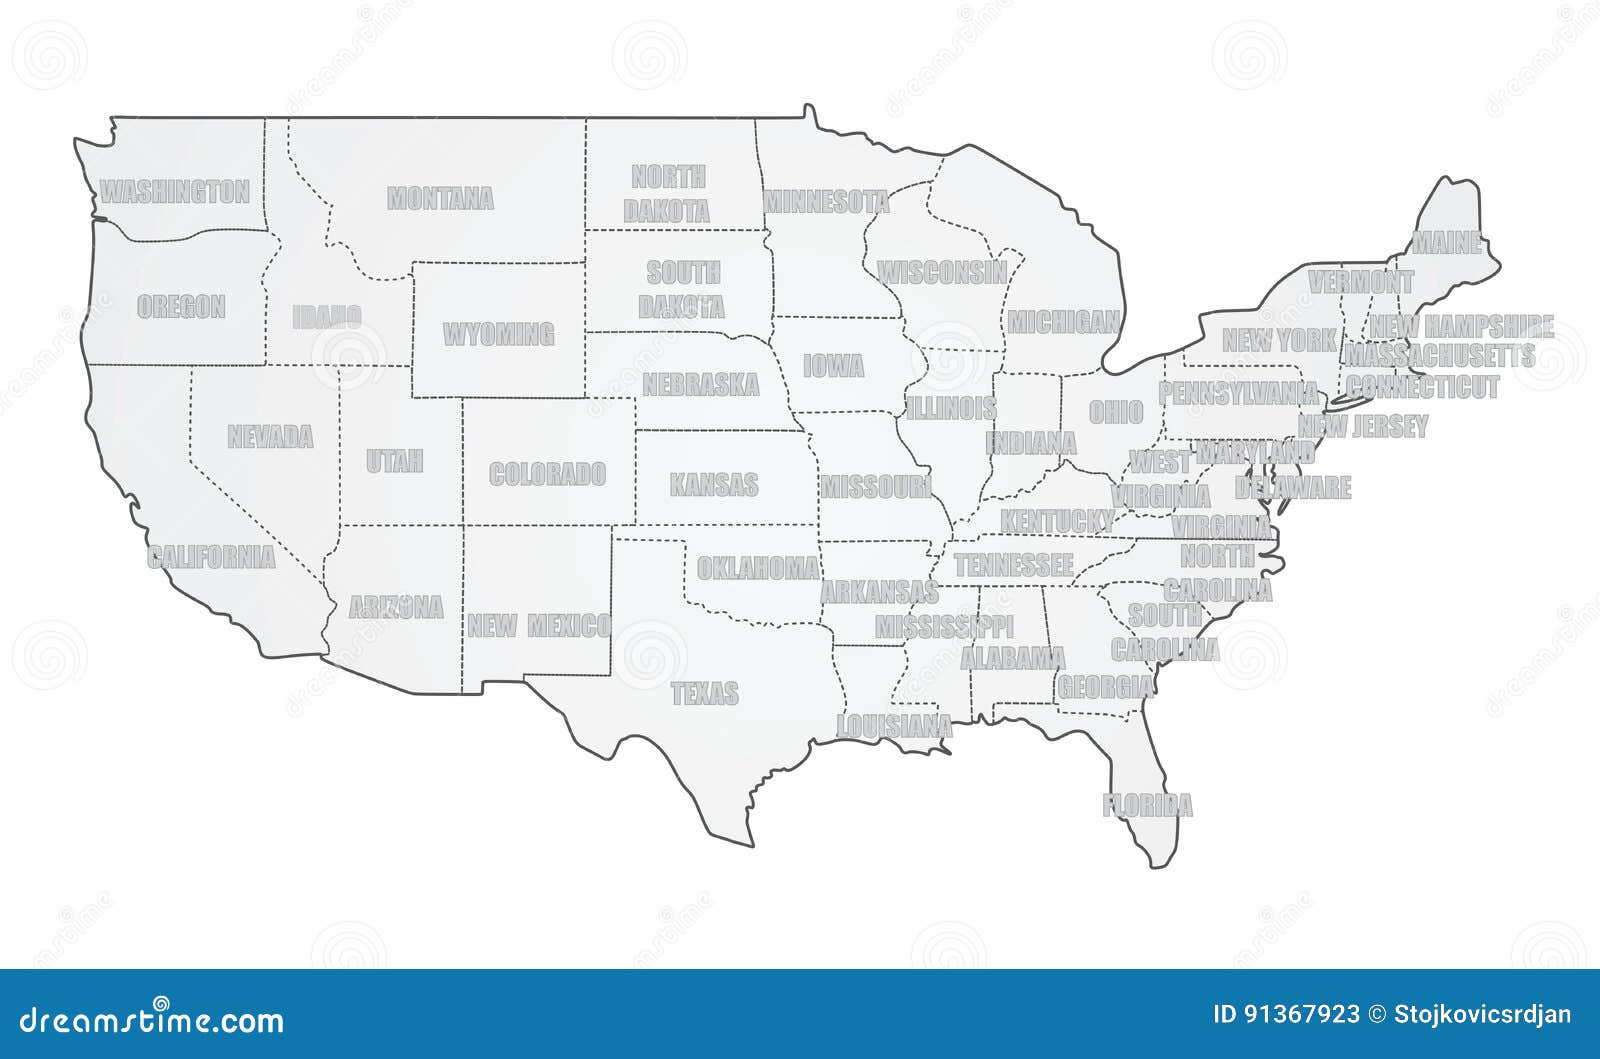 Bản đồ Hoa Kỳ trên nền trắng là một thước phim đầy màu sắc và sự trừu tượng. Nó giúp bạn dễ dàng hiểu được chính xác địa lý và trình bày toàn bộ hình tượng các bang và vùng lãnh thổ trong nước.